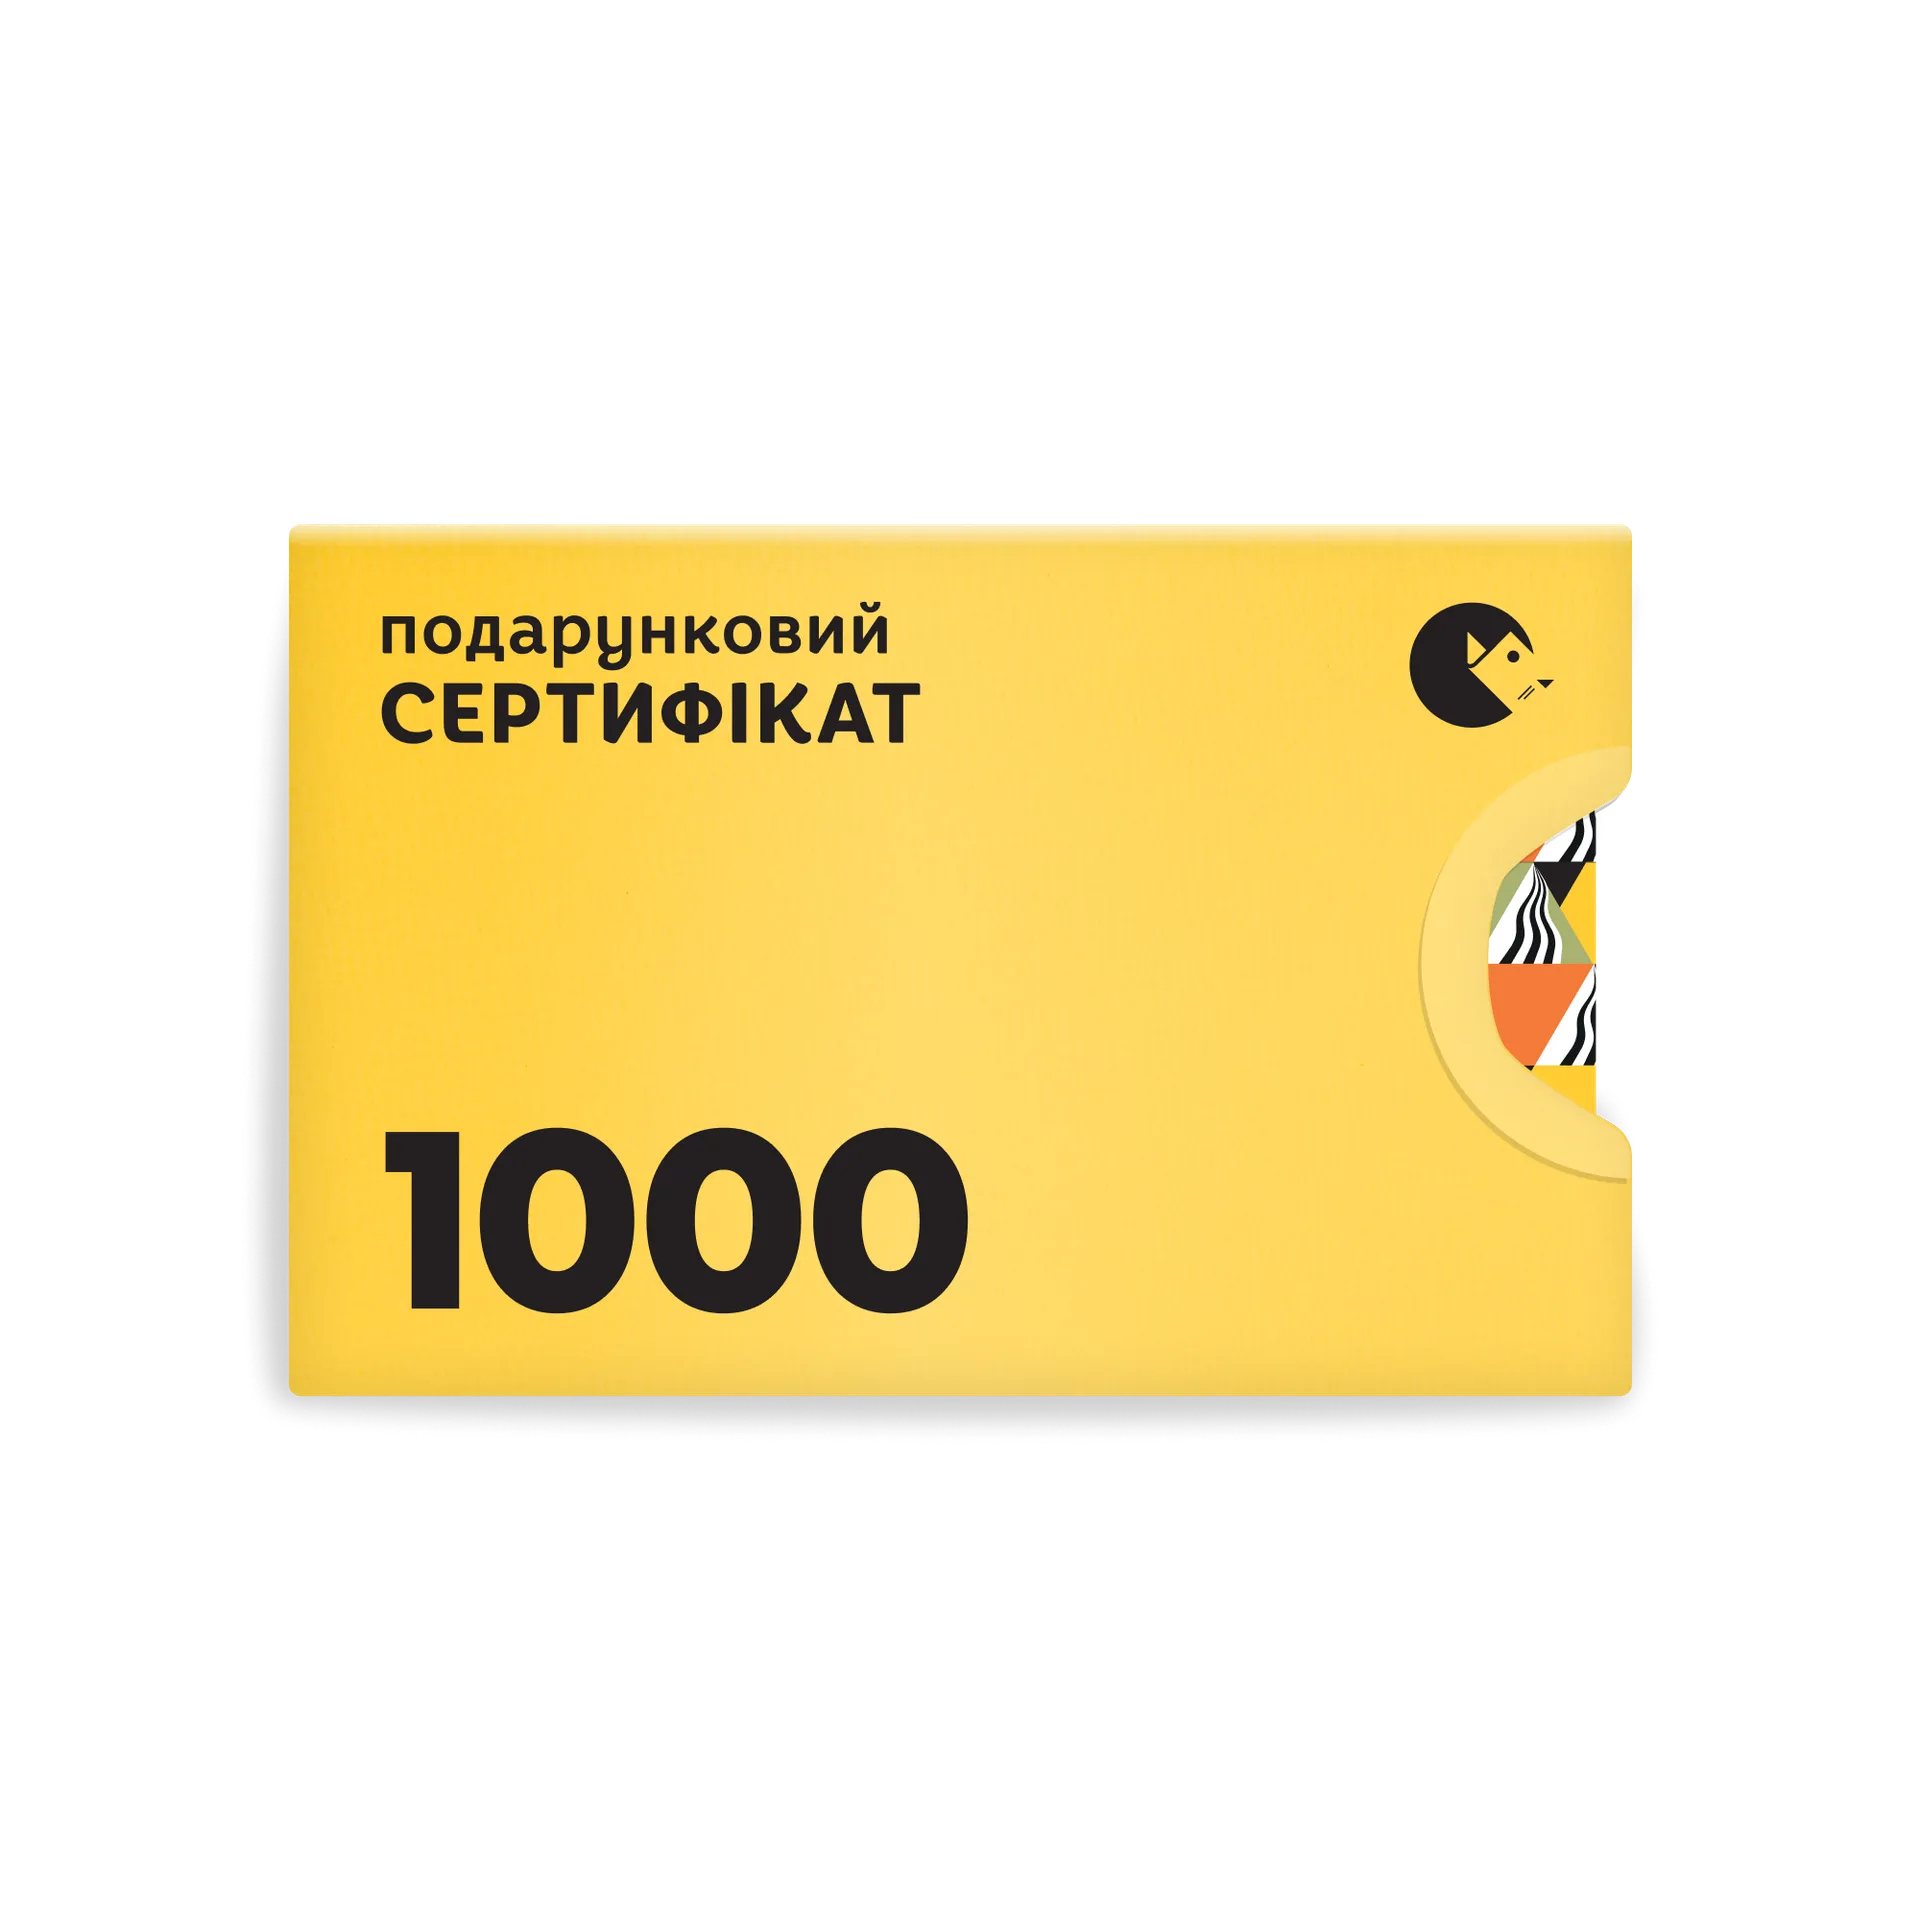 Подарунковий сертифікат ВСЛ 1000